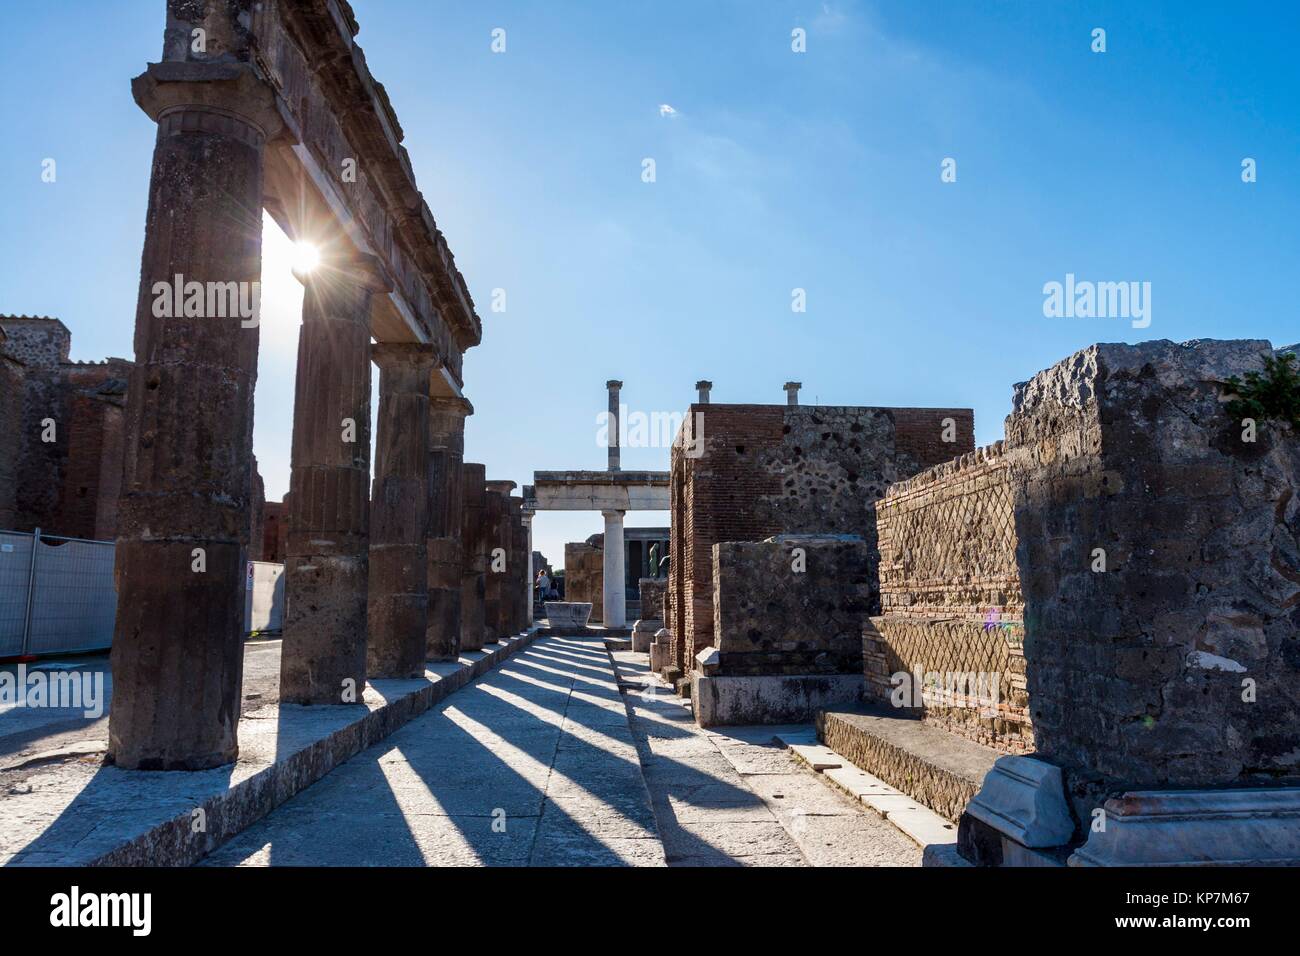 Ruines d'une importante cité romaine importante. Pompéi, la Campanie. Italie Banque D'Images